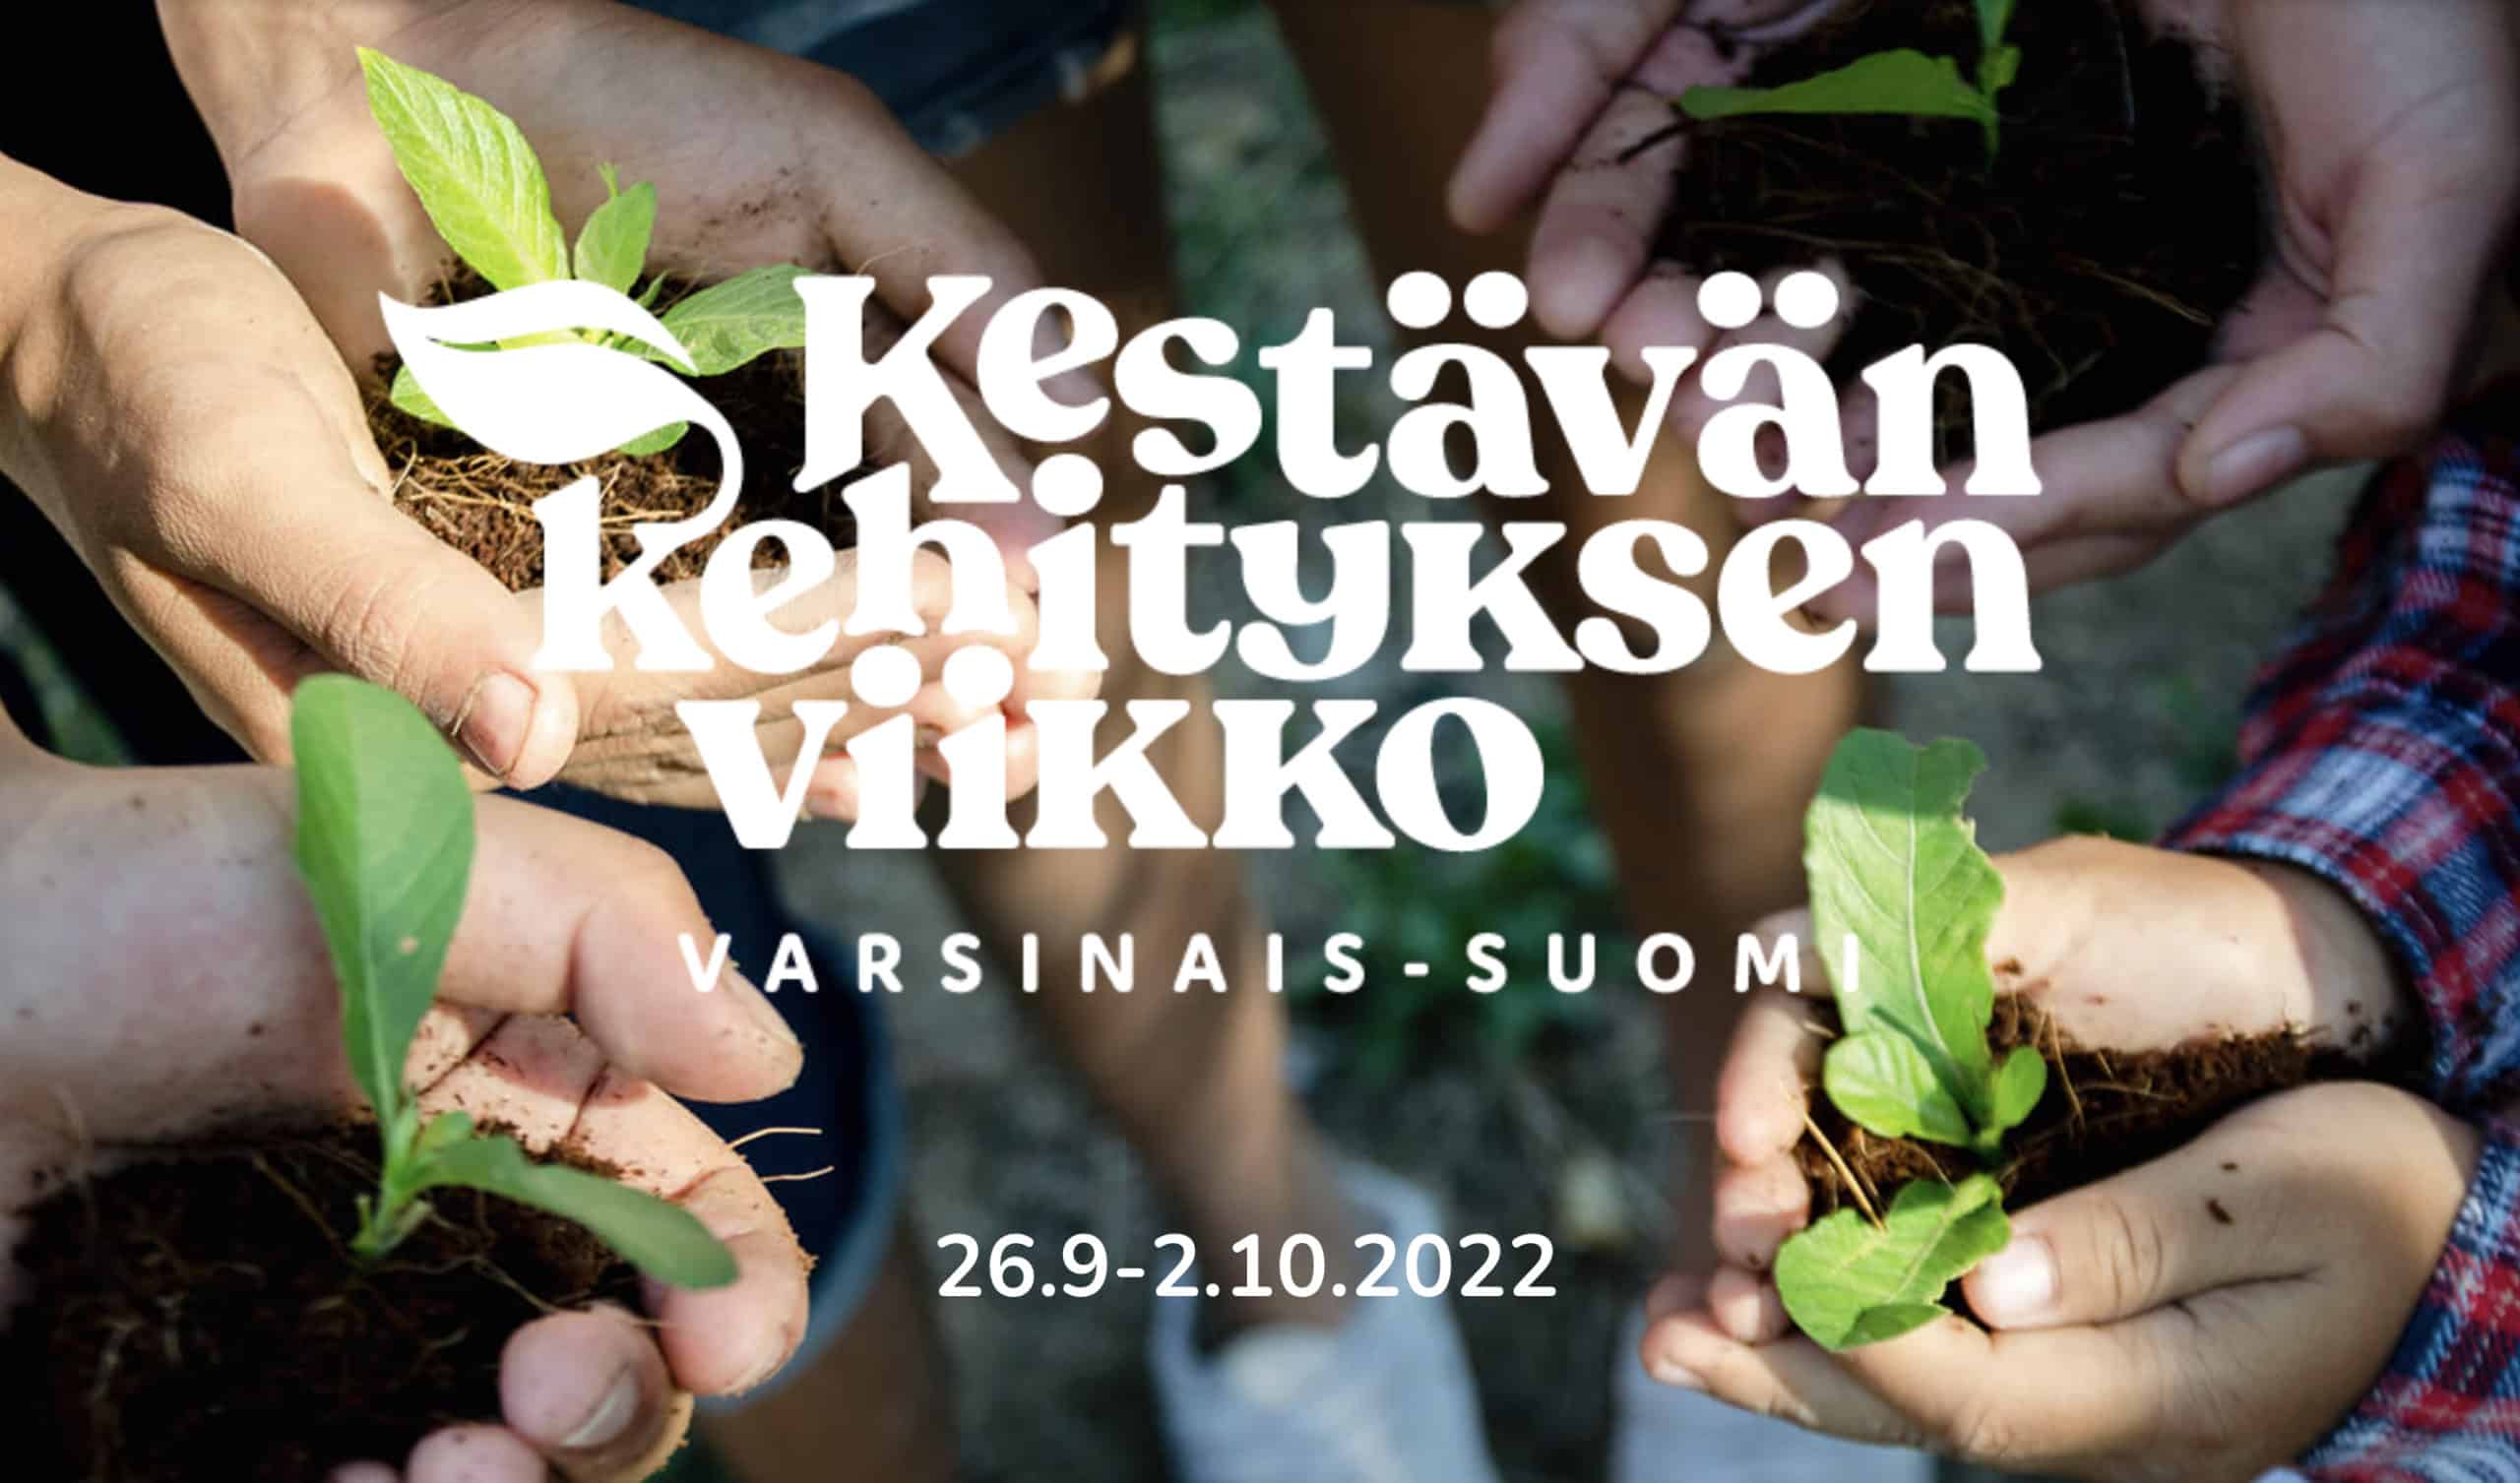 Kestävän kehityksen viikko järjestetään tänä syksynä ensi kertaa myös Varsinais-Suomessa!